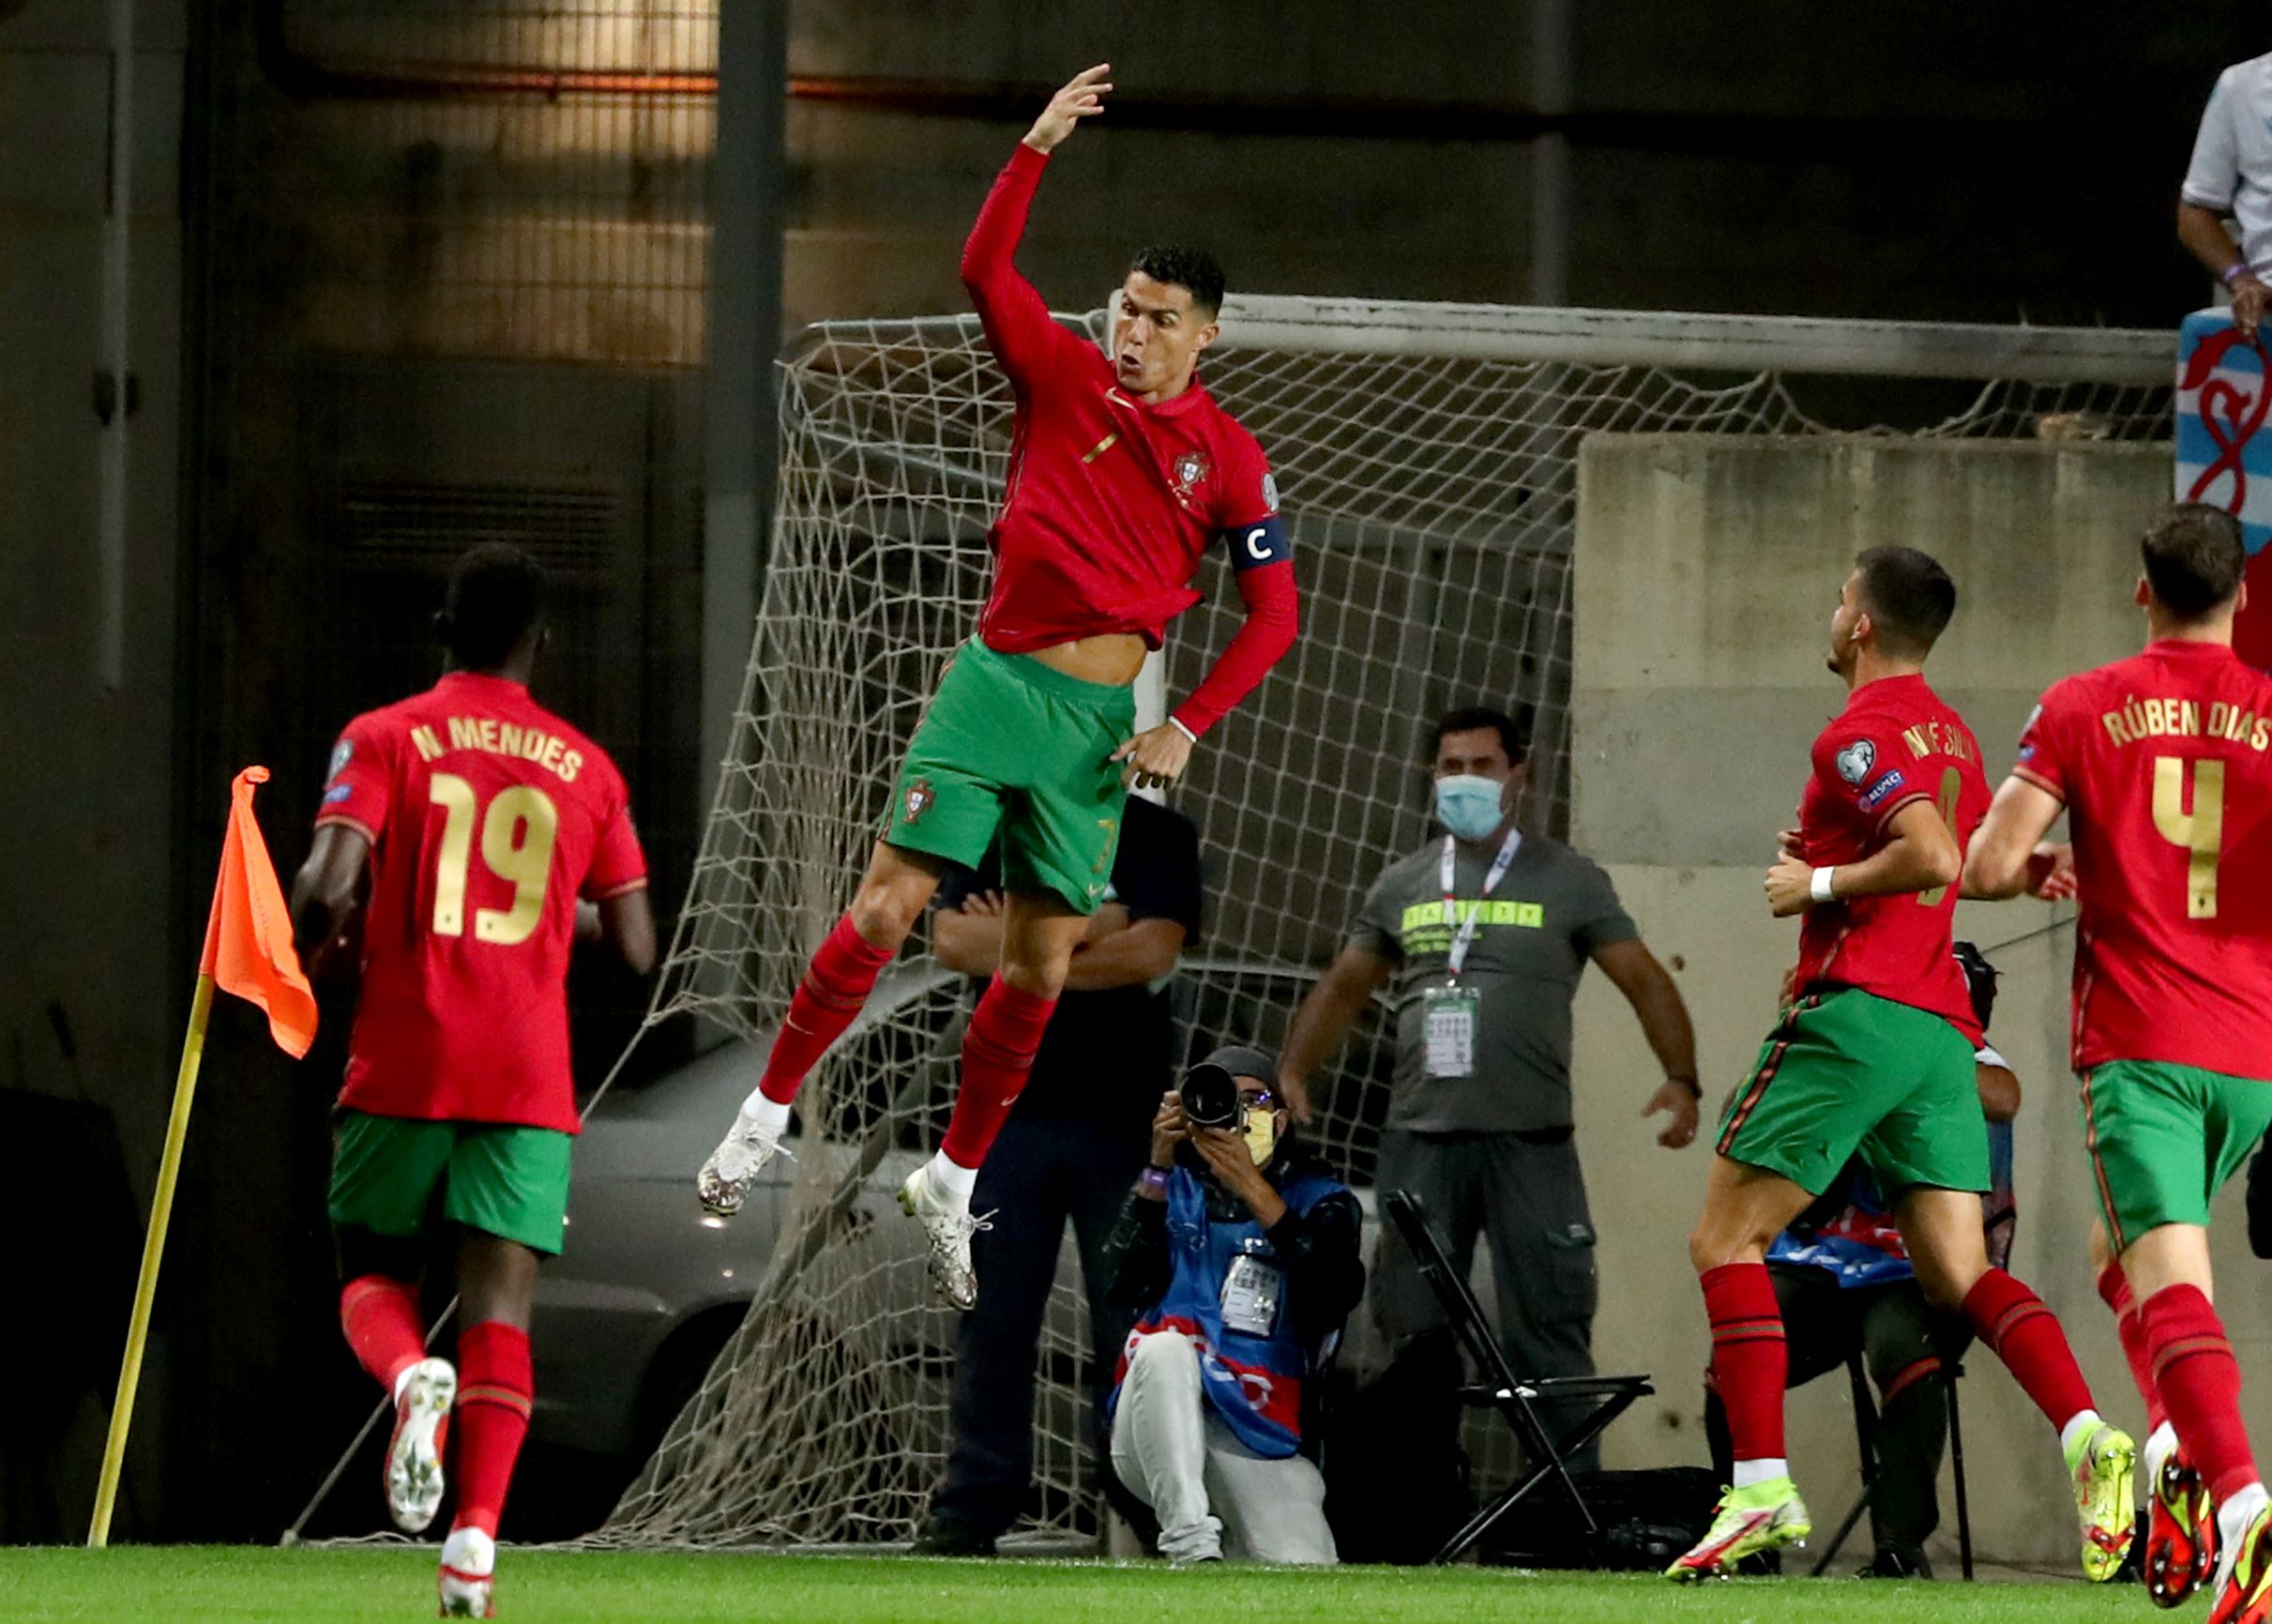 Ronaldo celebrujący zdobycie gola - kupon el. MŚ 11.11.2021, Superbet